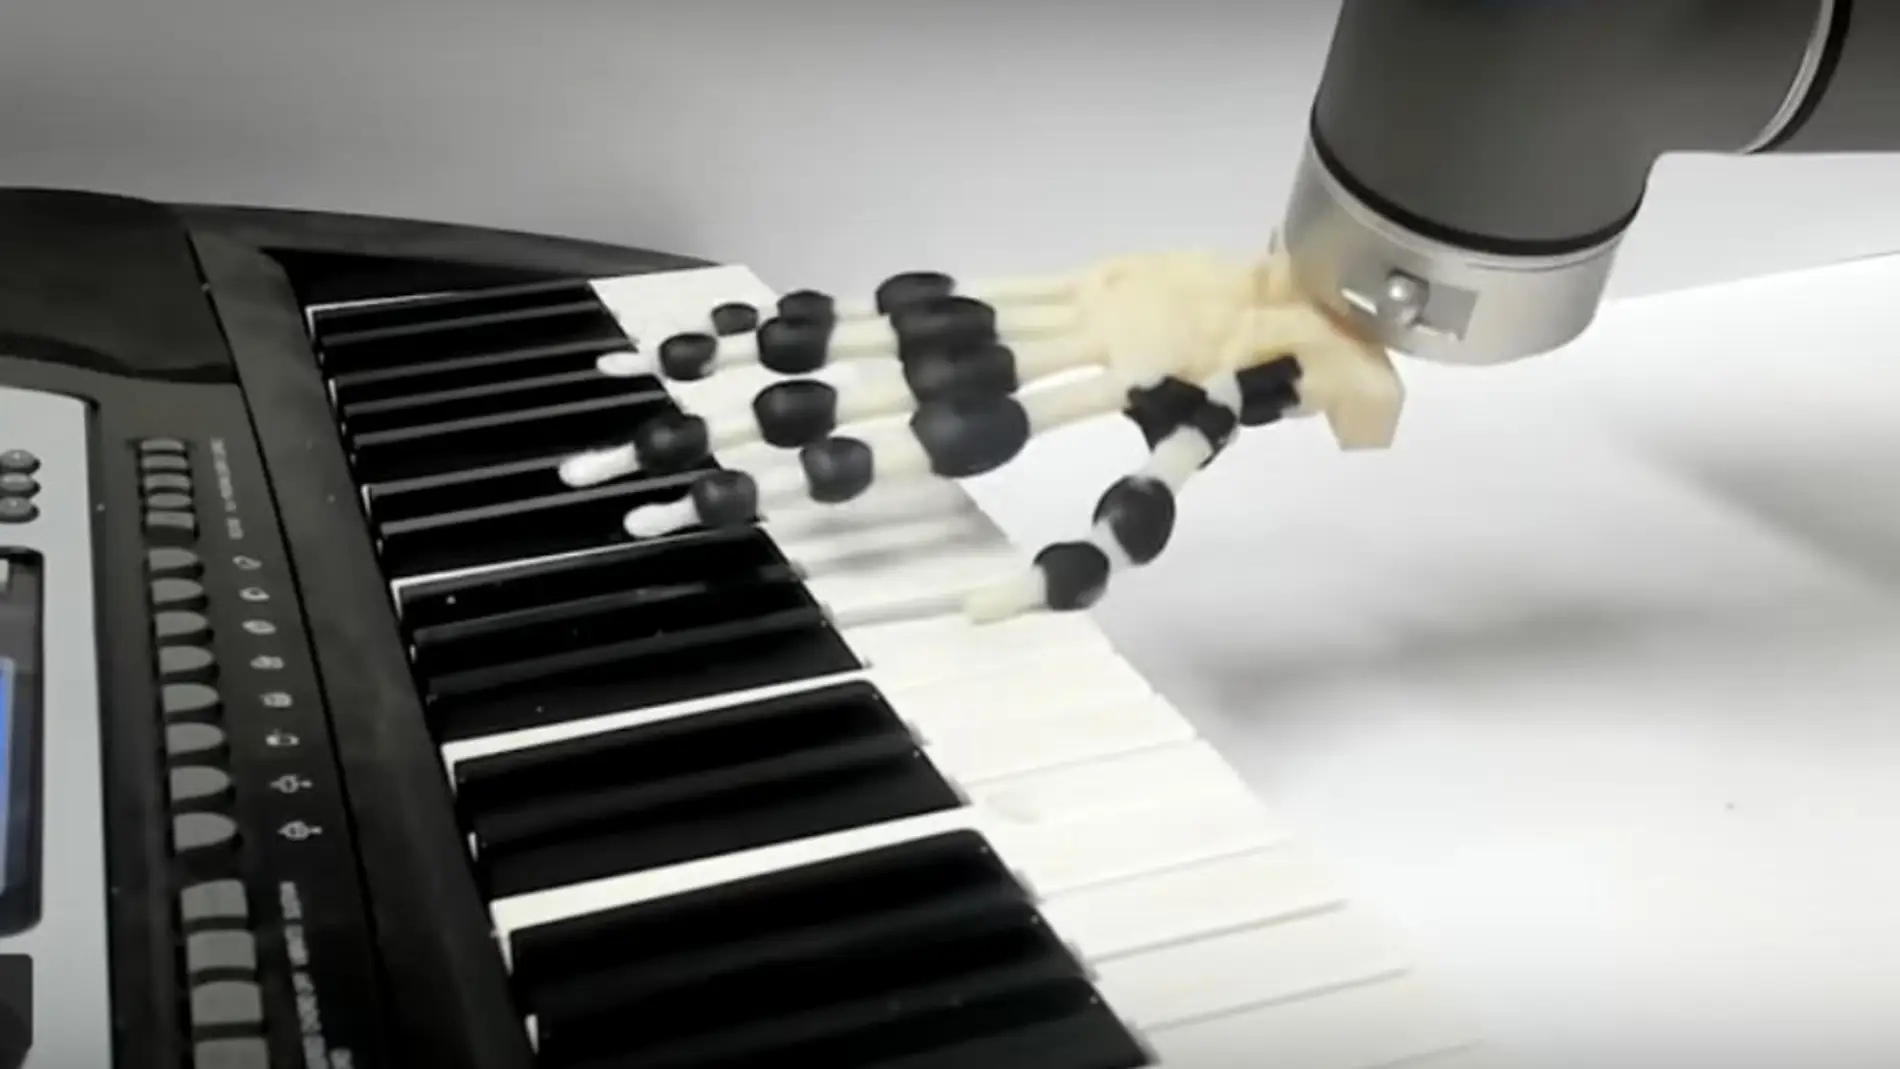 Brazo robótico tocando el piano